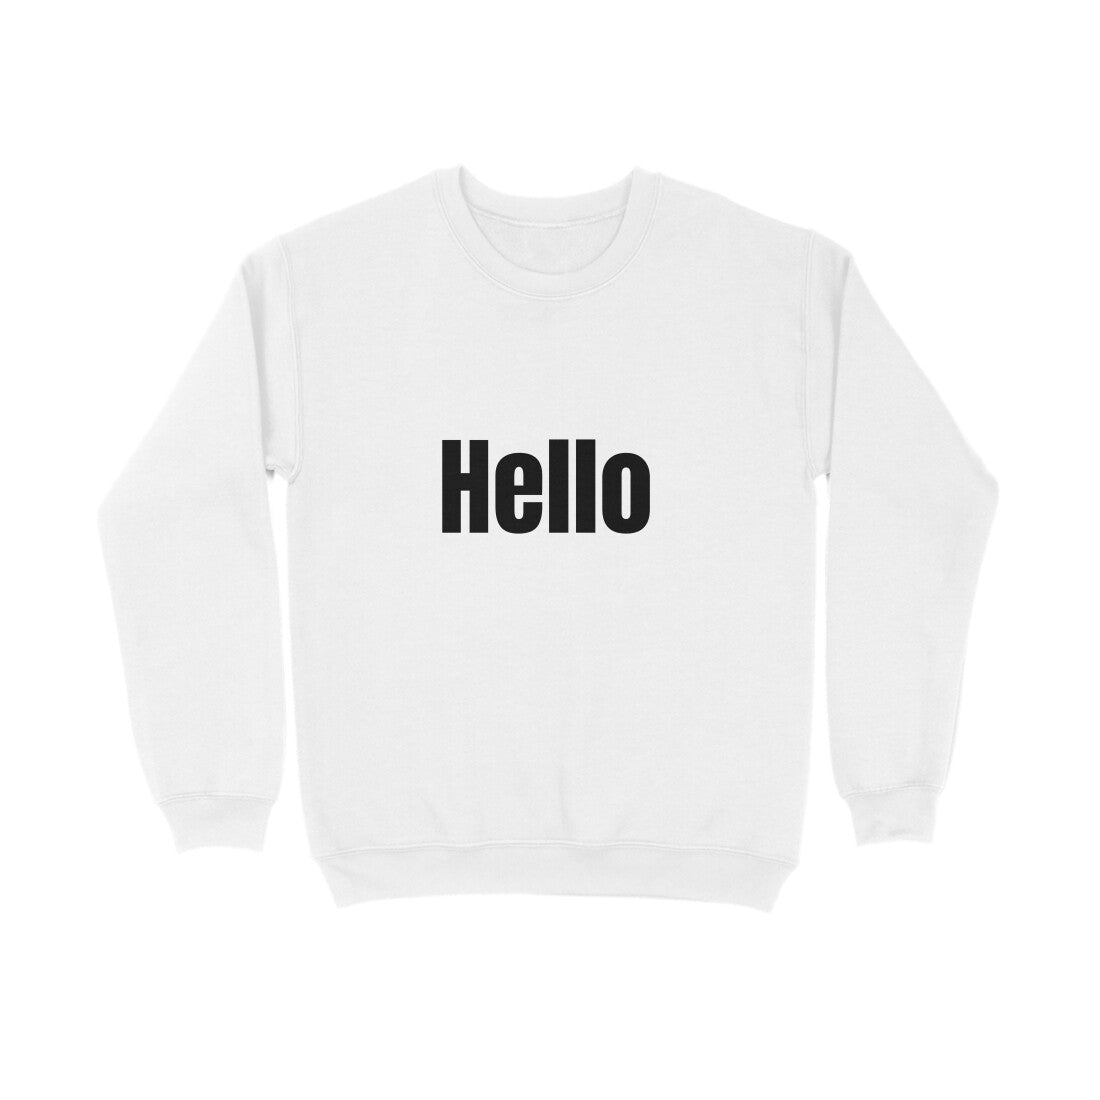 Hello' Sweatshirt in dark font